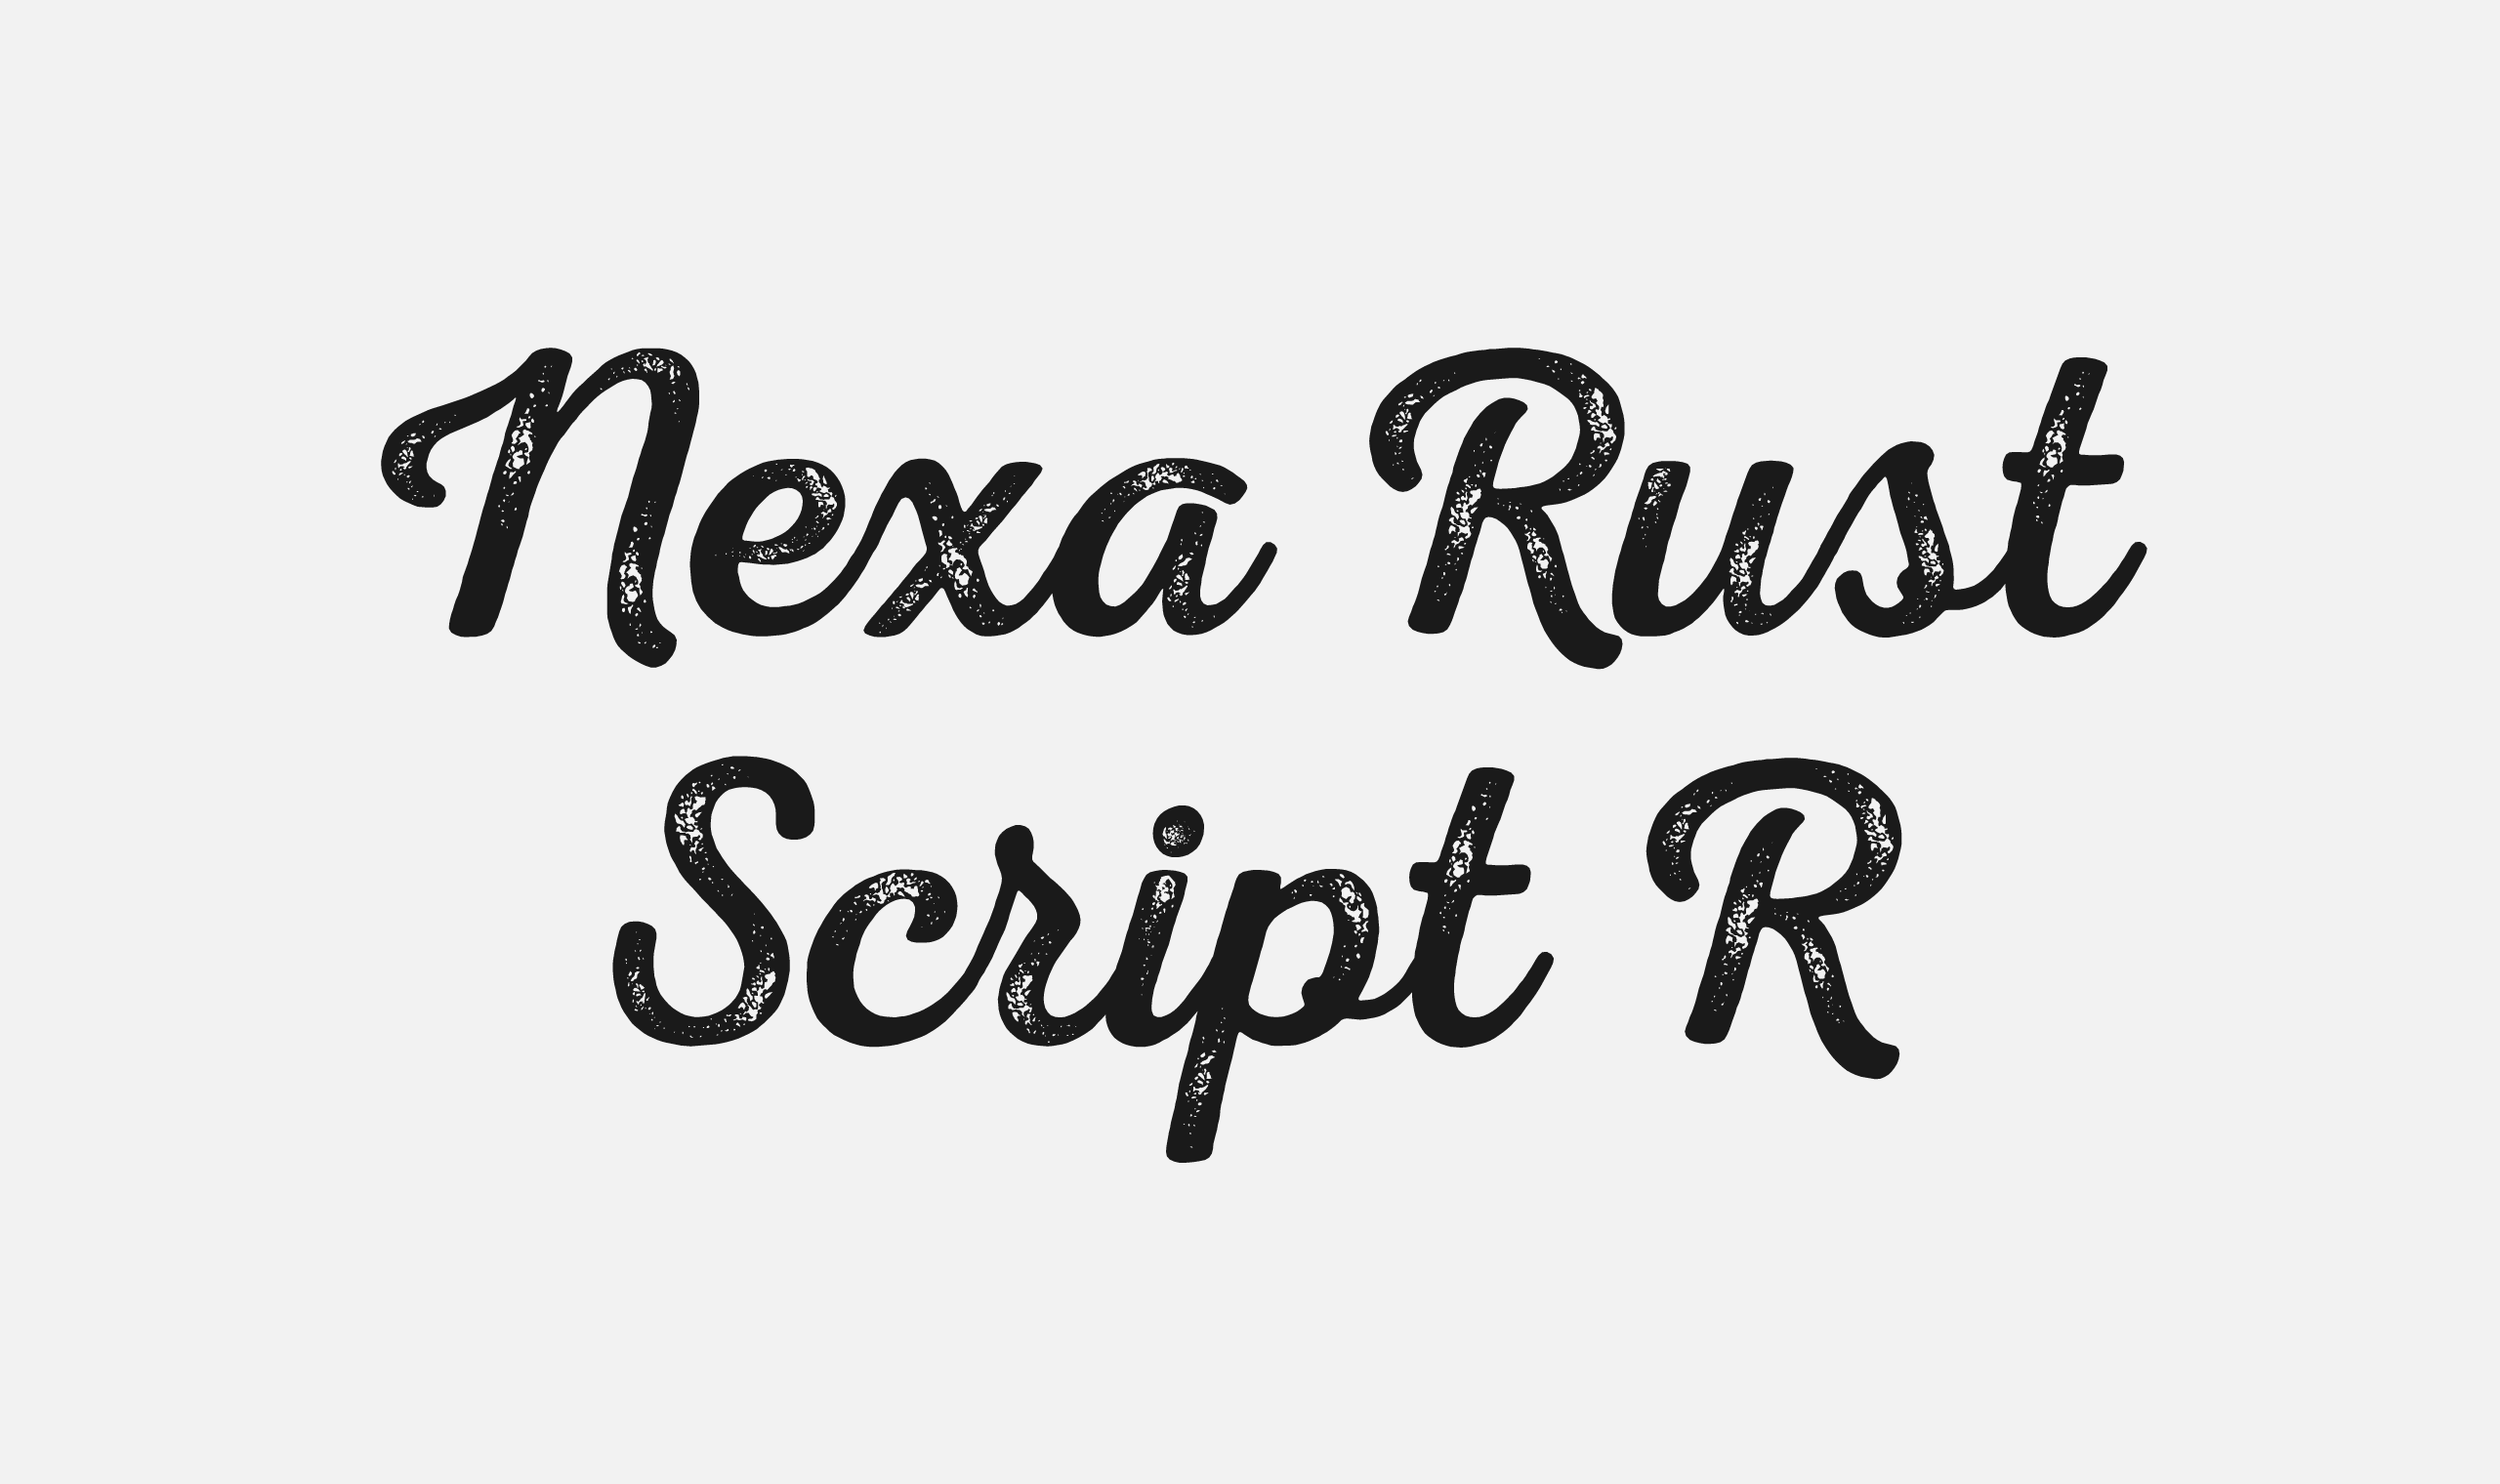 폰코, 폰트패브릭, Fontfabric, Nexa Rust Script R